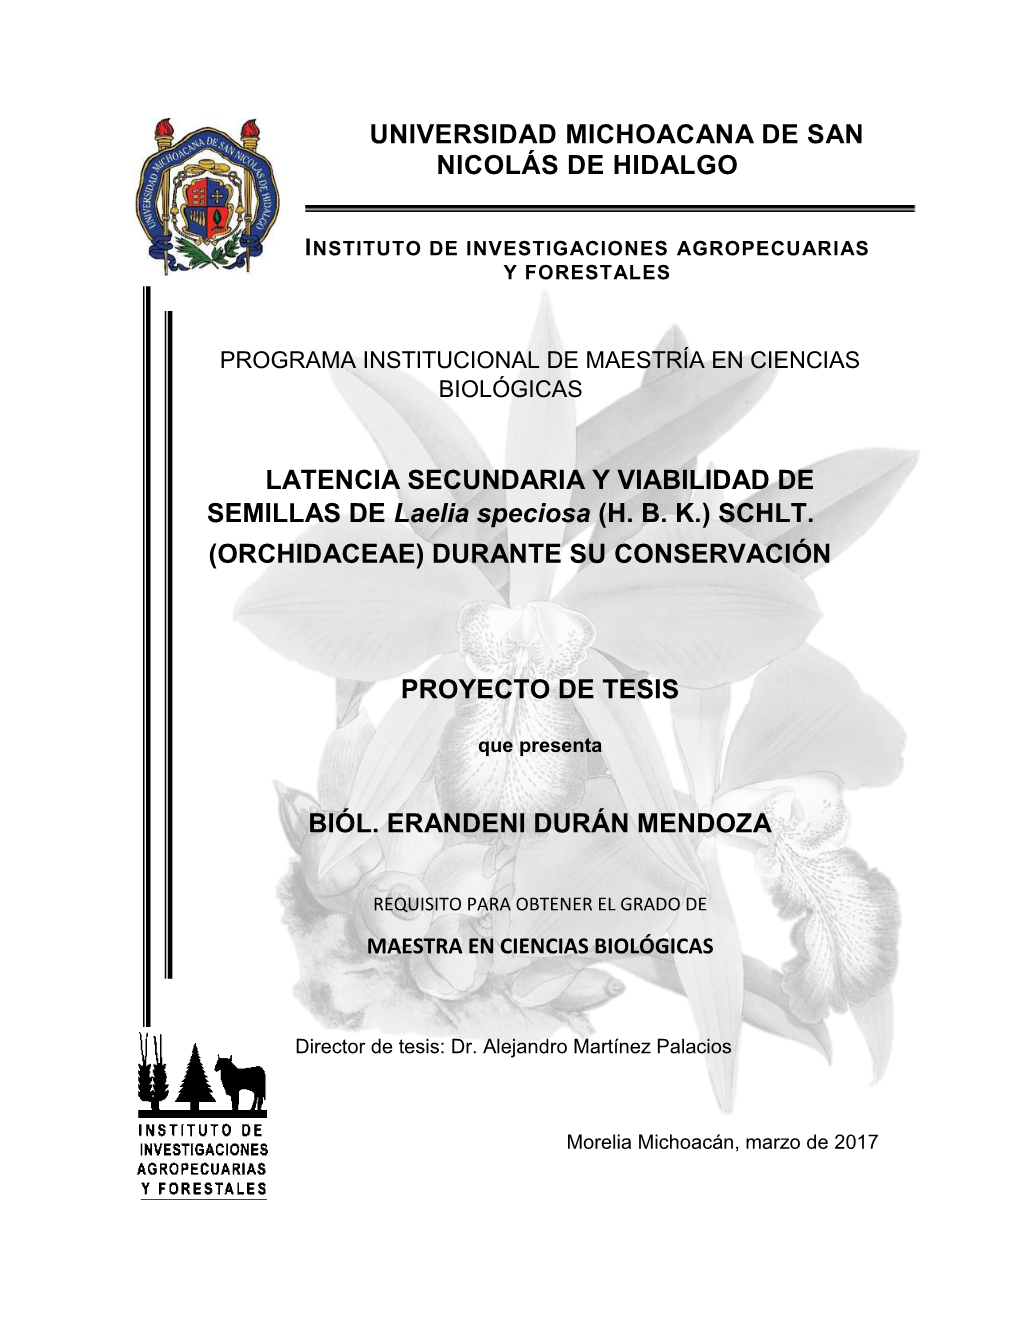 UNIVERSIDAD MICHOACANA DE SAN NICOLÁS DE HIDALGO LATENCIA SECUNDARIA Y VIABILIDAD DE SEMILLAS DE Laelia Speciosa (H. B. K.)